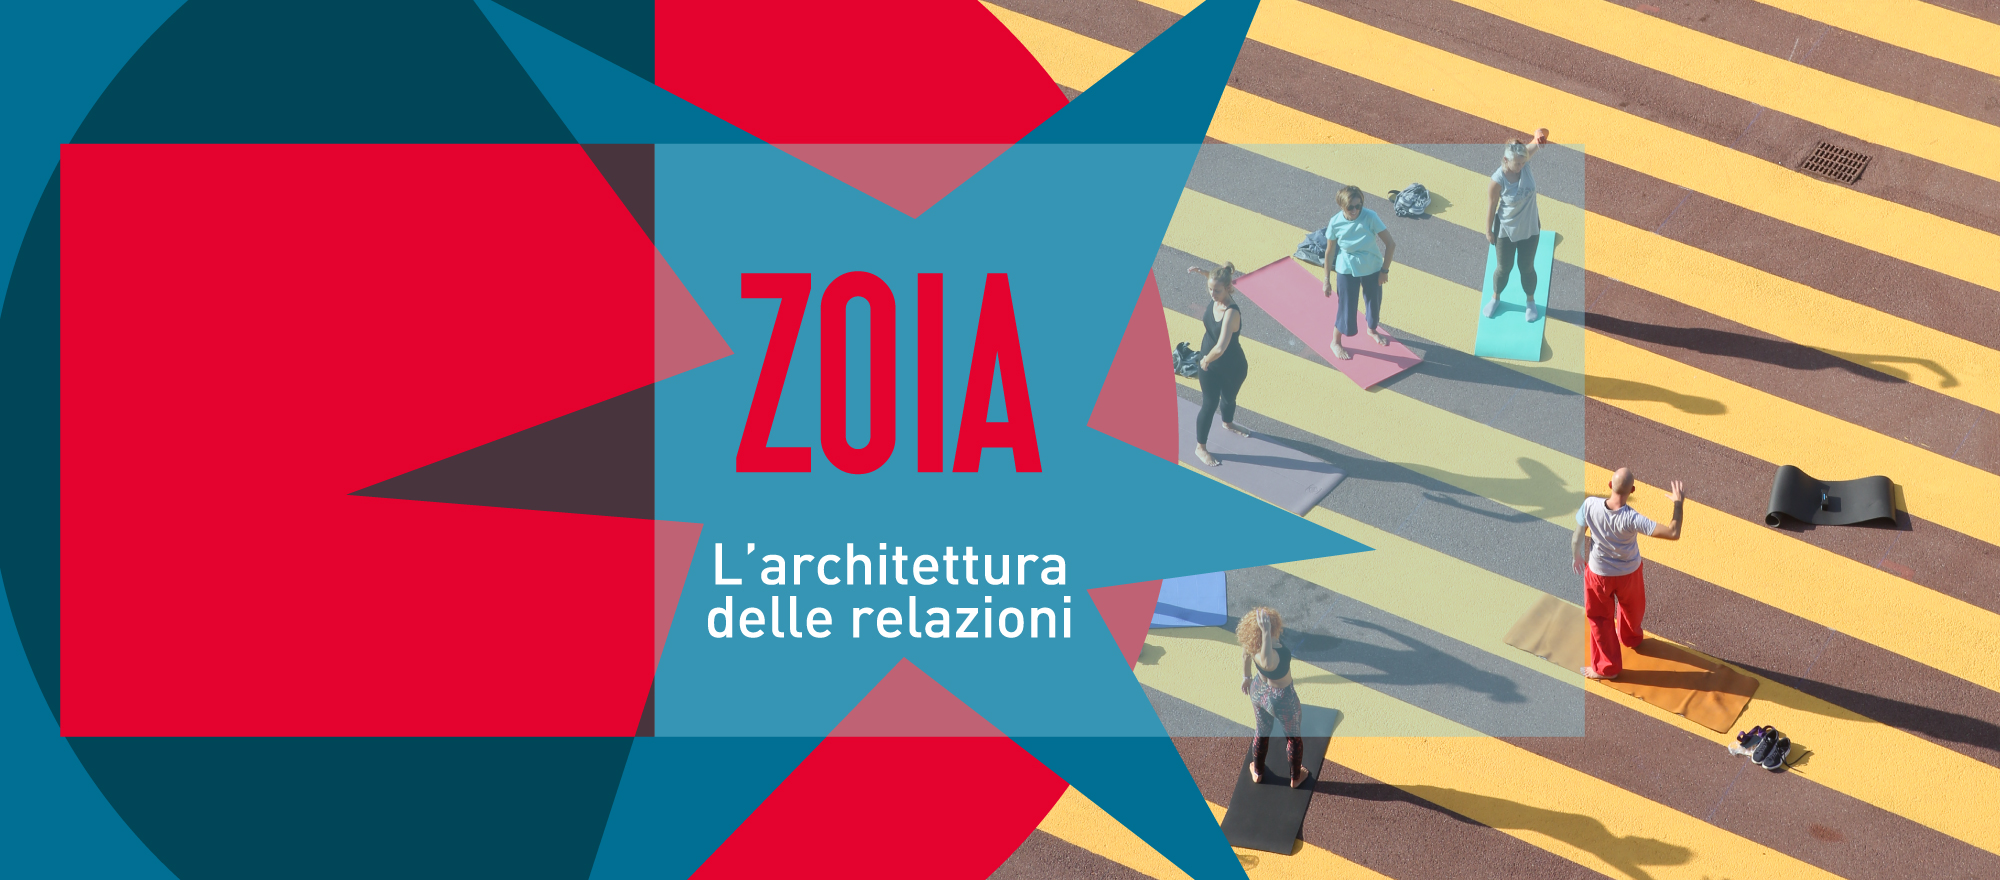 Continua il viaggio di “INSIEMI”, il progetto di CCL per riscoprire i “quantieri” di Milano. Prossima fermata: Zoia.